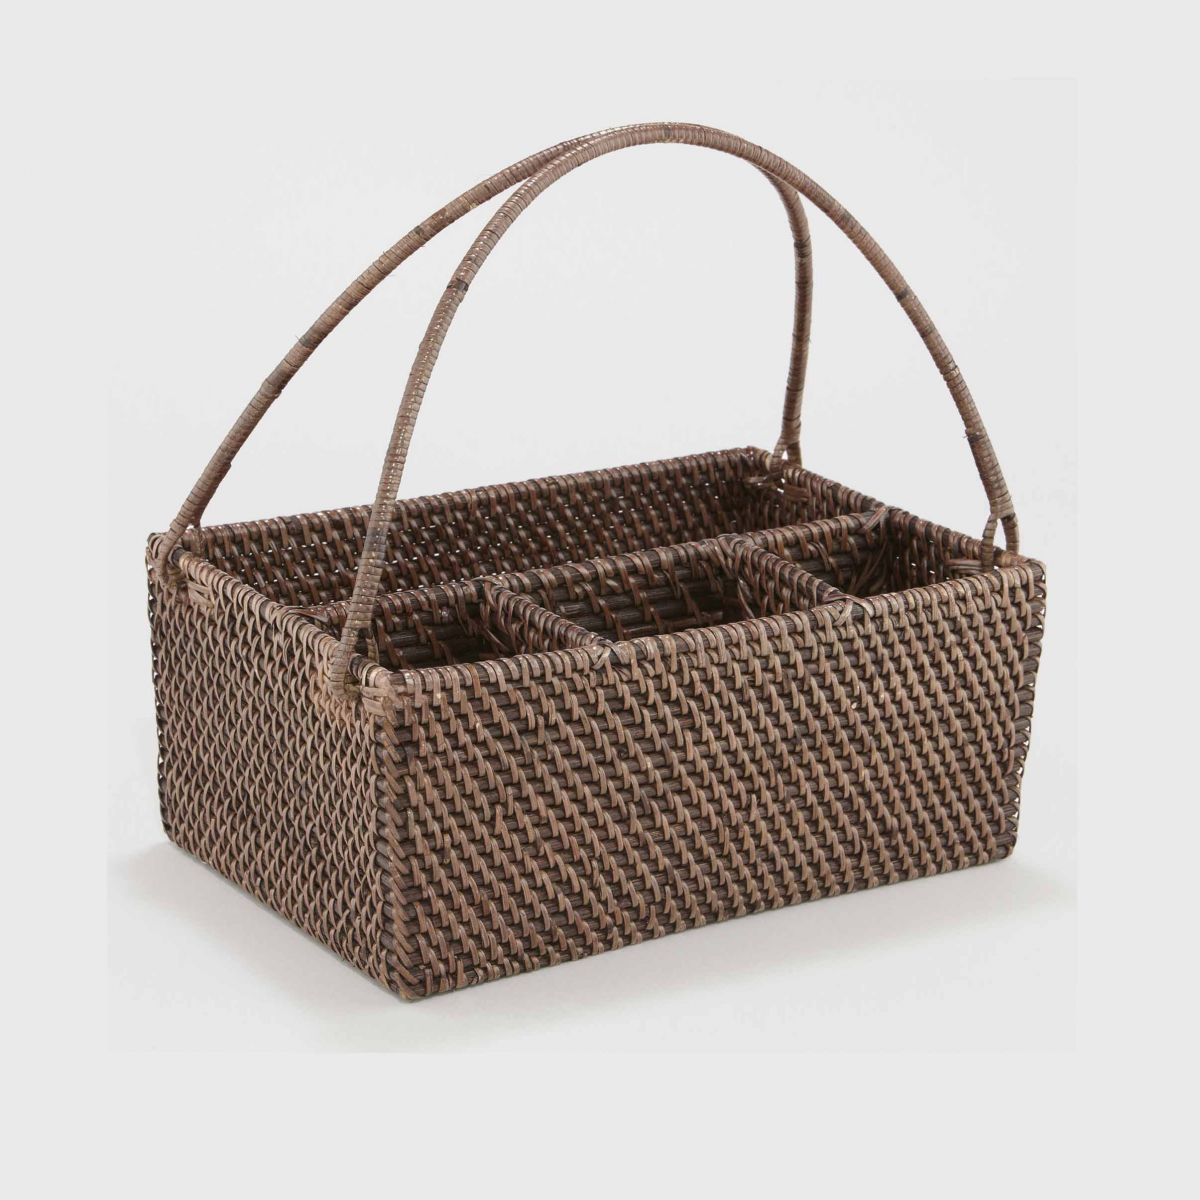 Caddy Basket